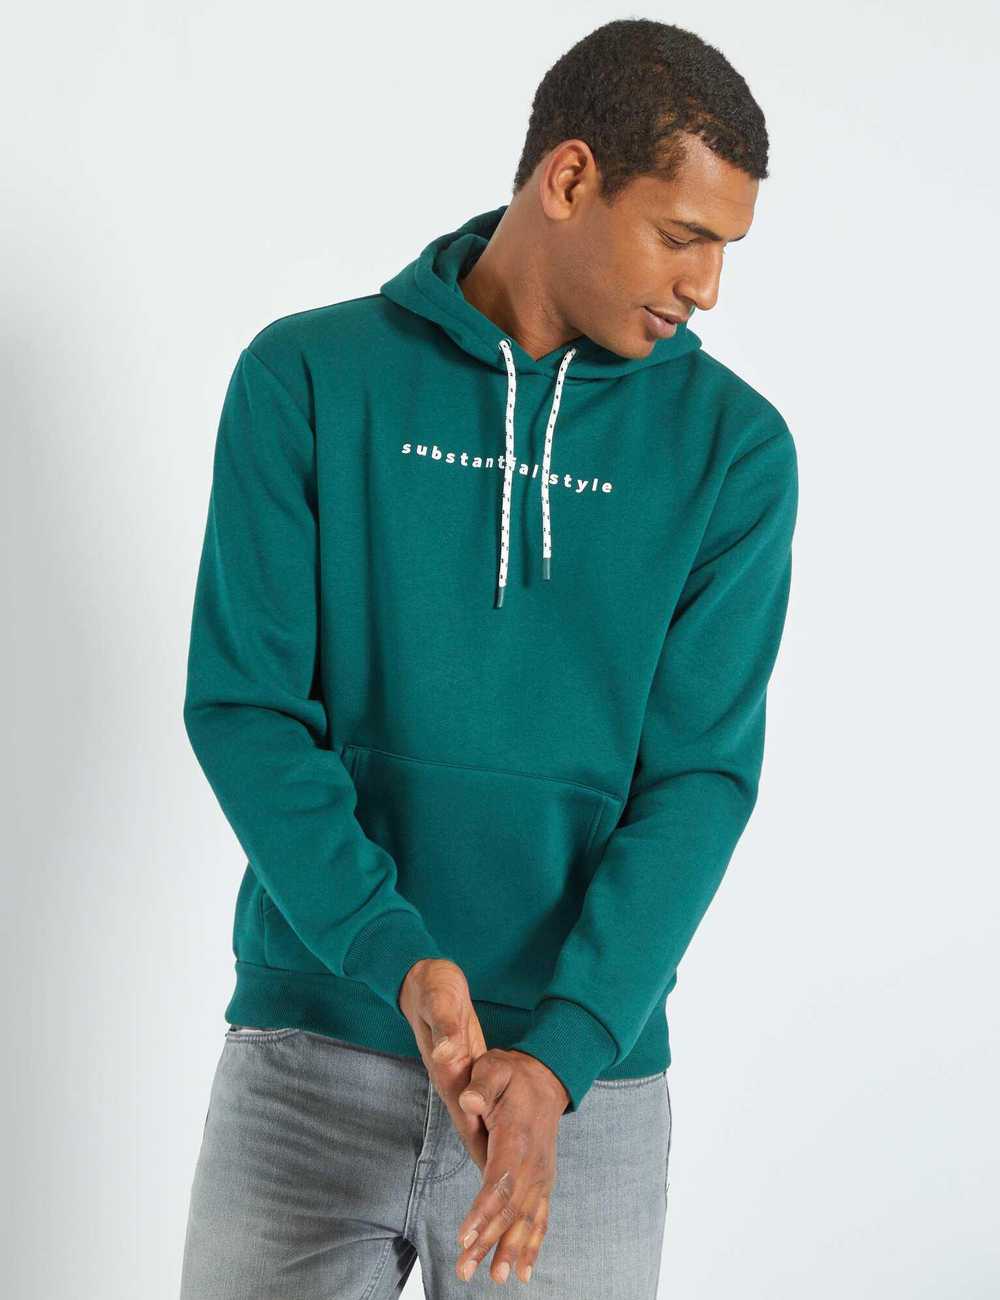 Buy Sweatshirt fabric hoodie Online in Dubai u0026 the UAE|Kiabi